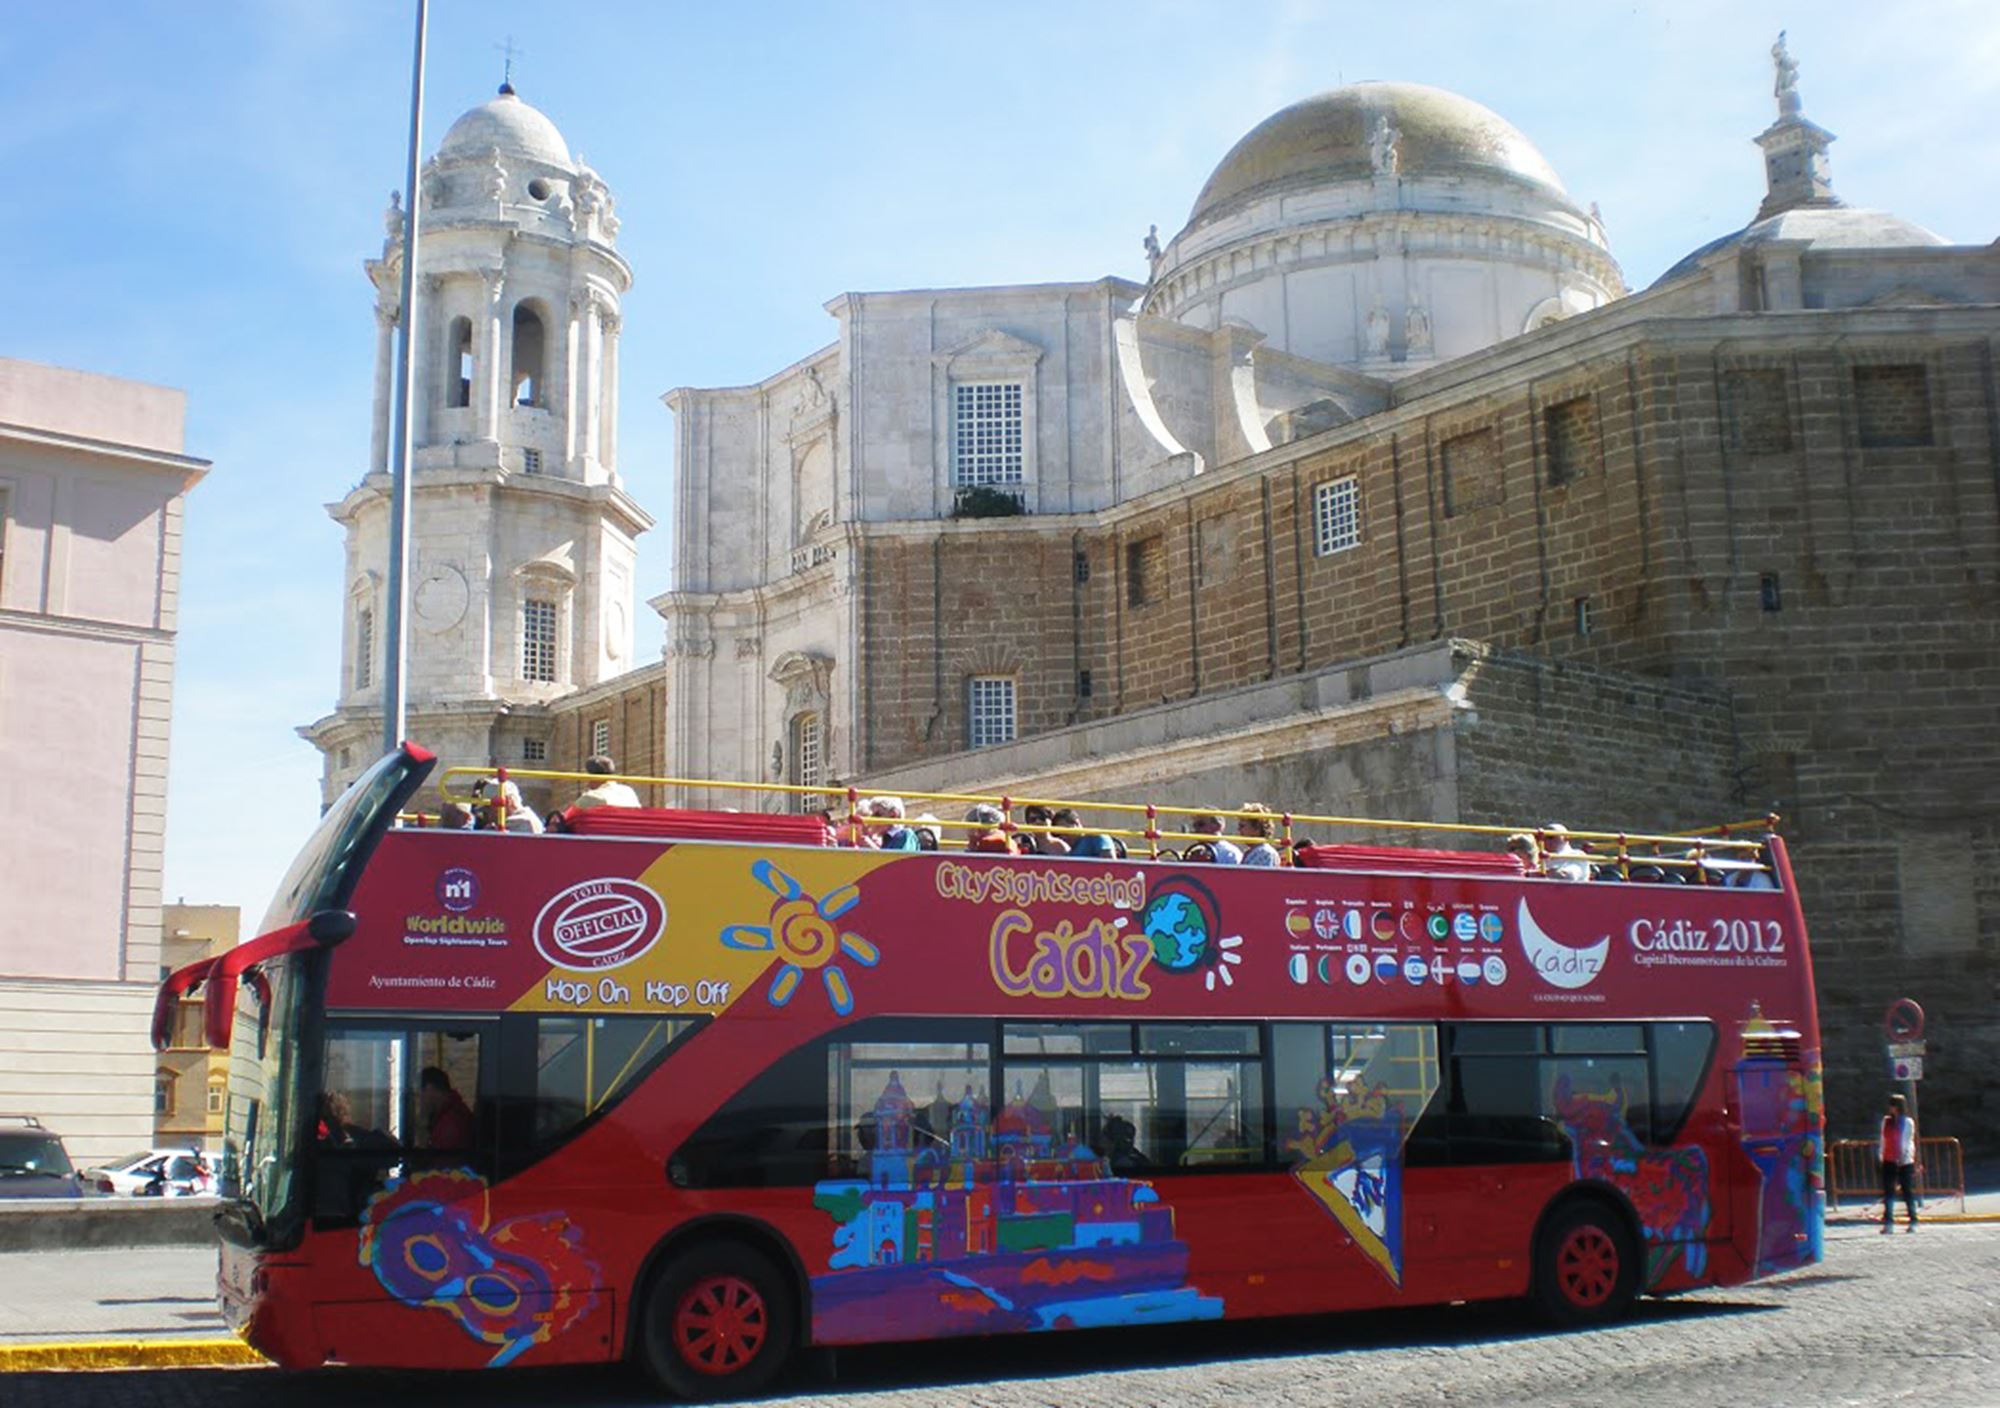 acheter réservations réserver visites guidées tours billets visiter Bus Touristique City Sightseeing Cadix